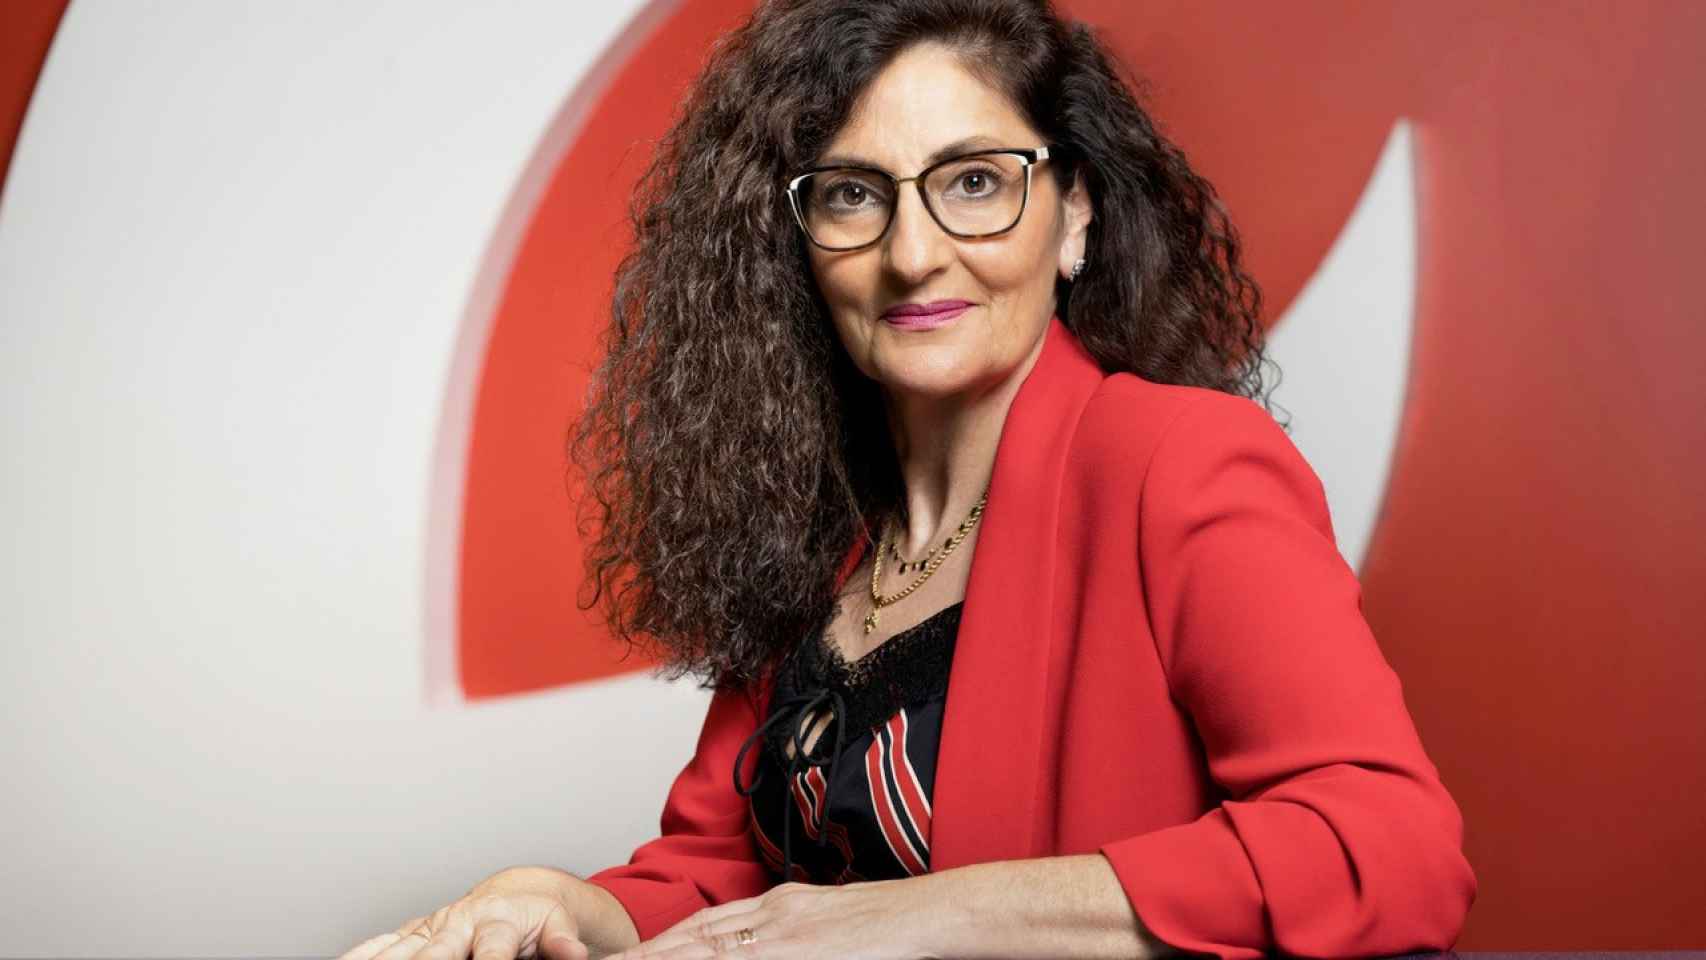 Rosa Carabel, CEO de Eroski / Eroski